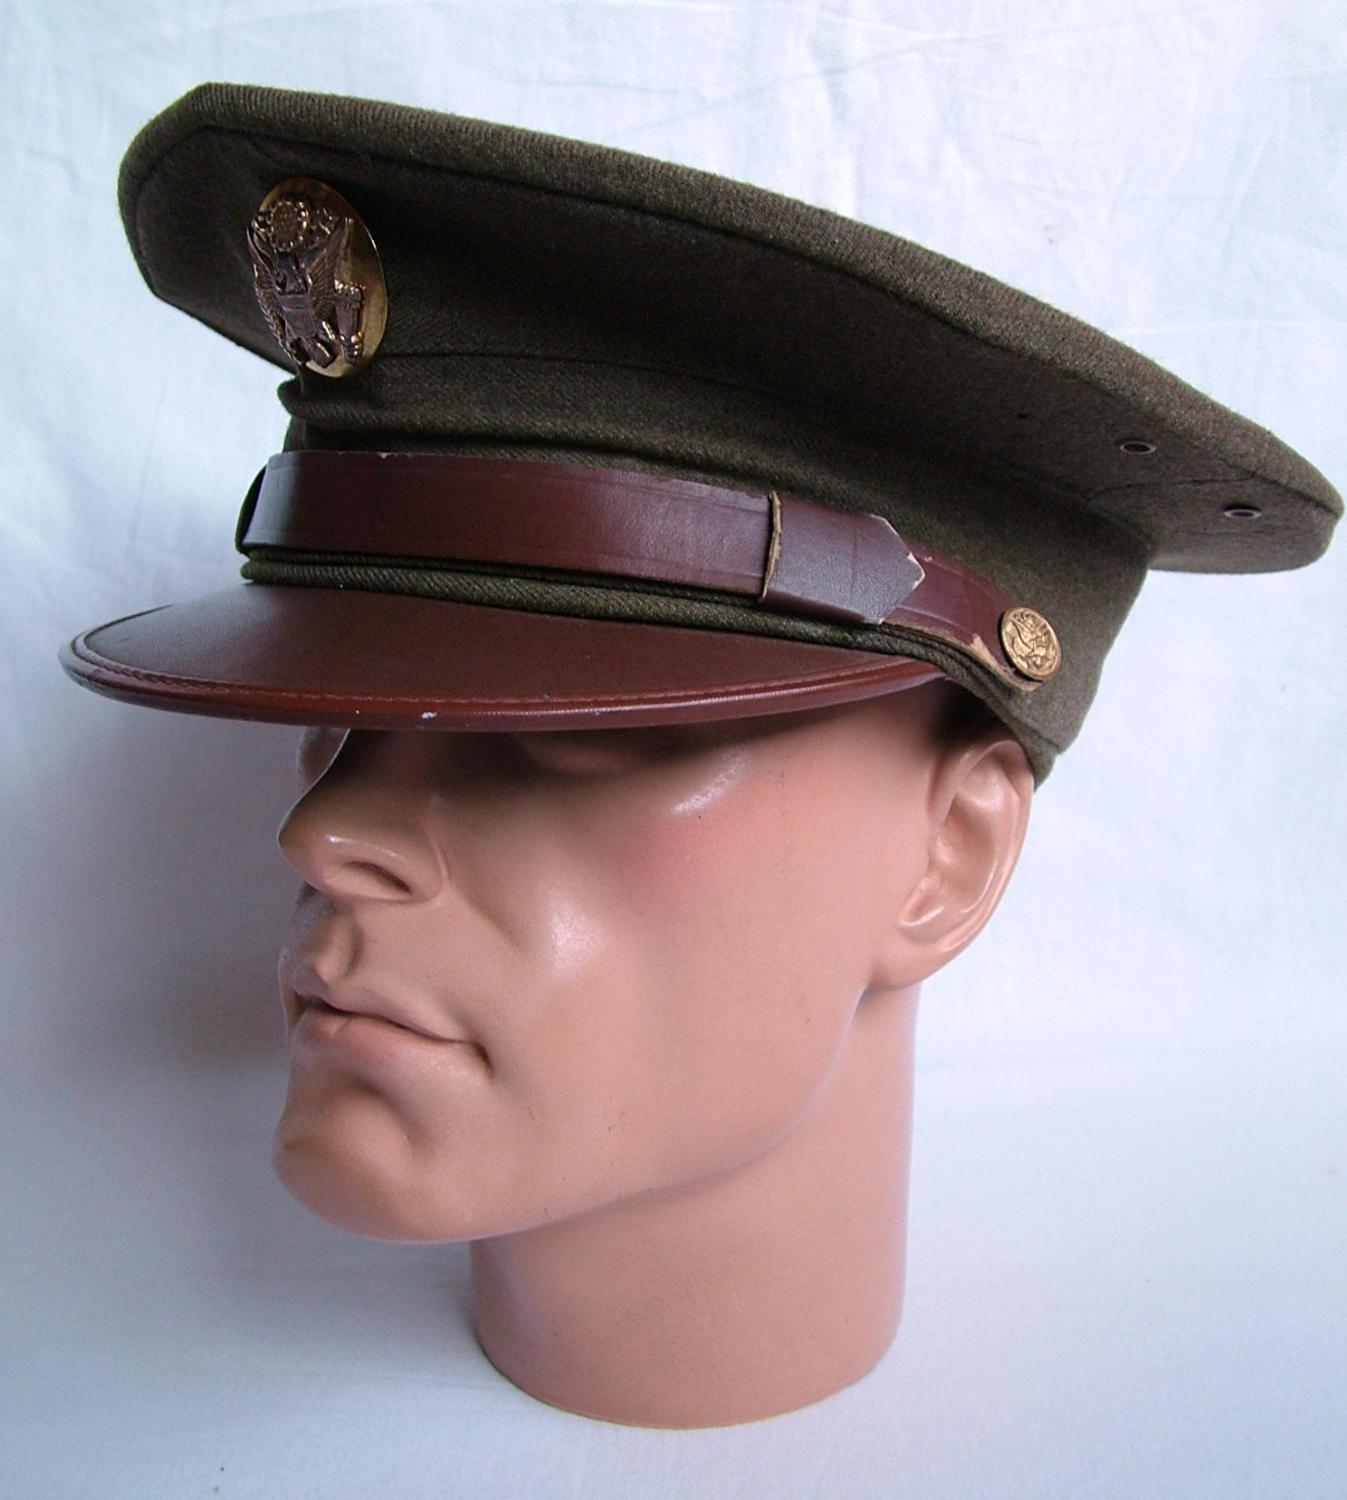 USAAF Enlisted Man's Visor Cap